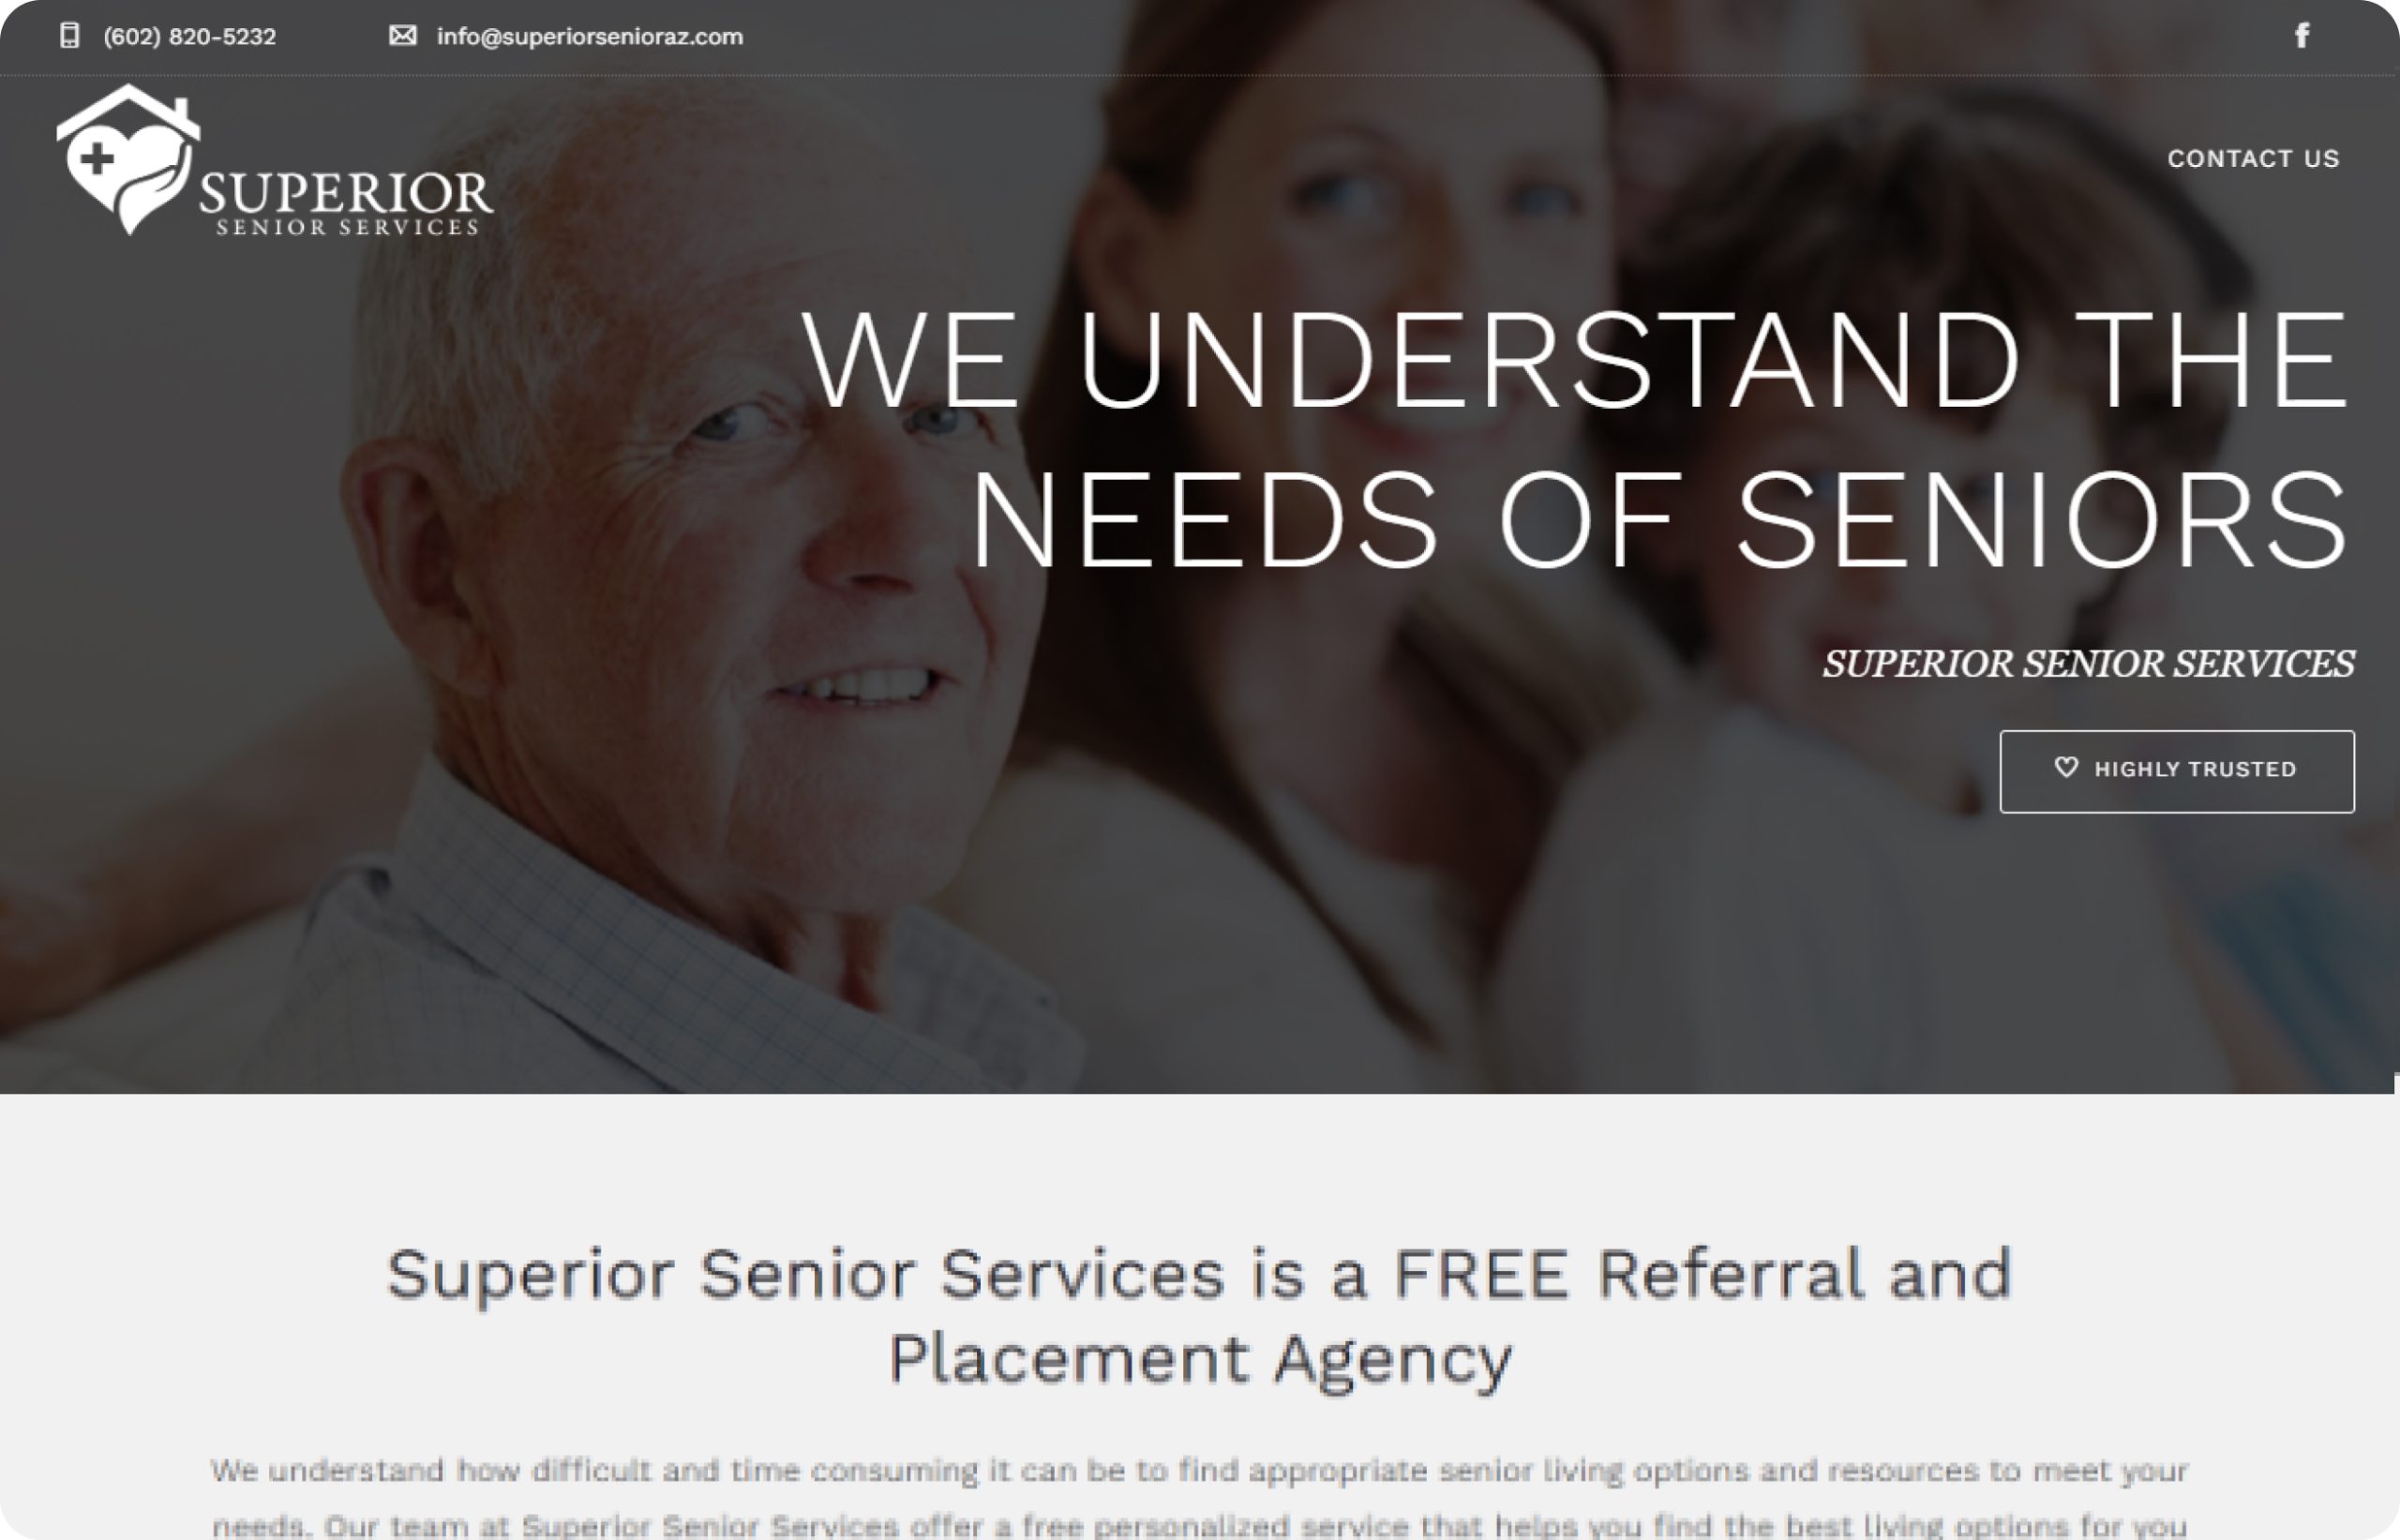 Superior Senior Services